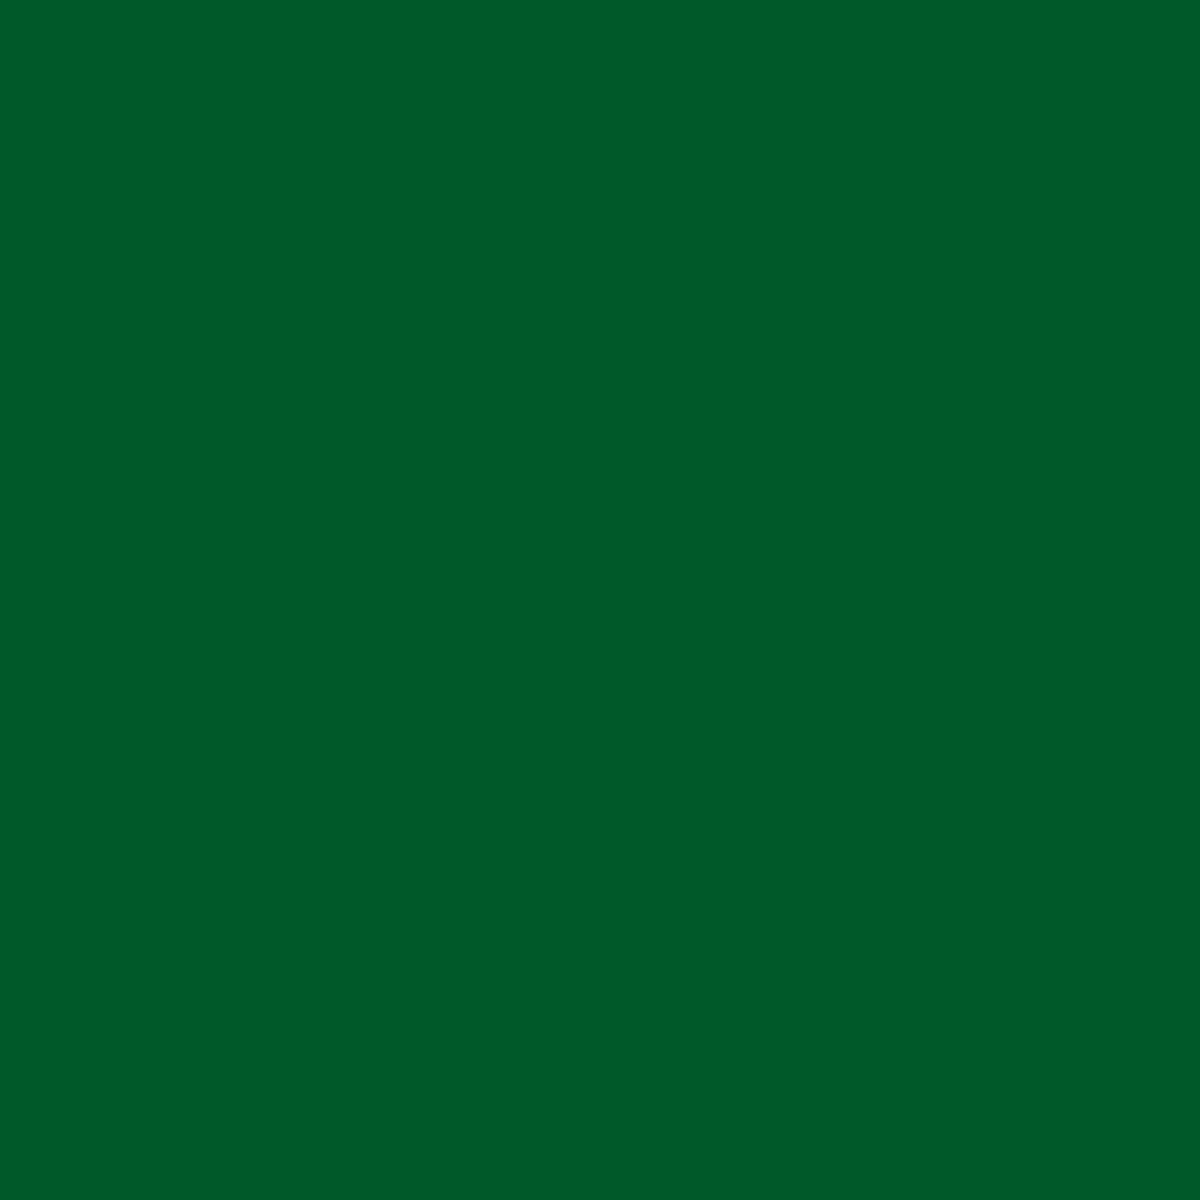 3M Envision transparante kleurenfolie 3730-26L groen 1,22m x 45,7m